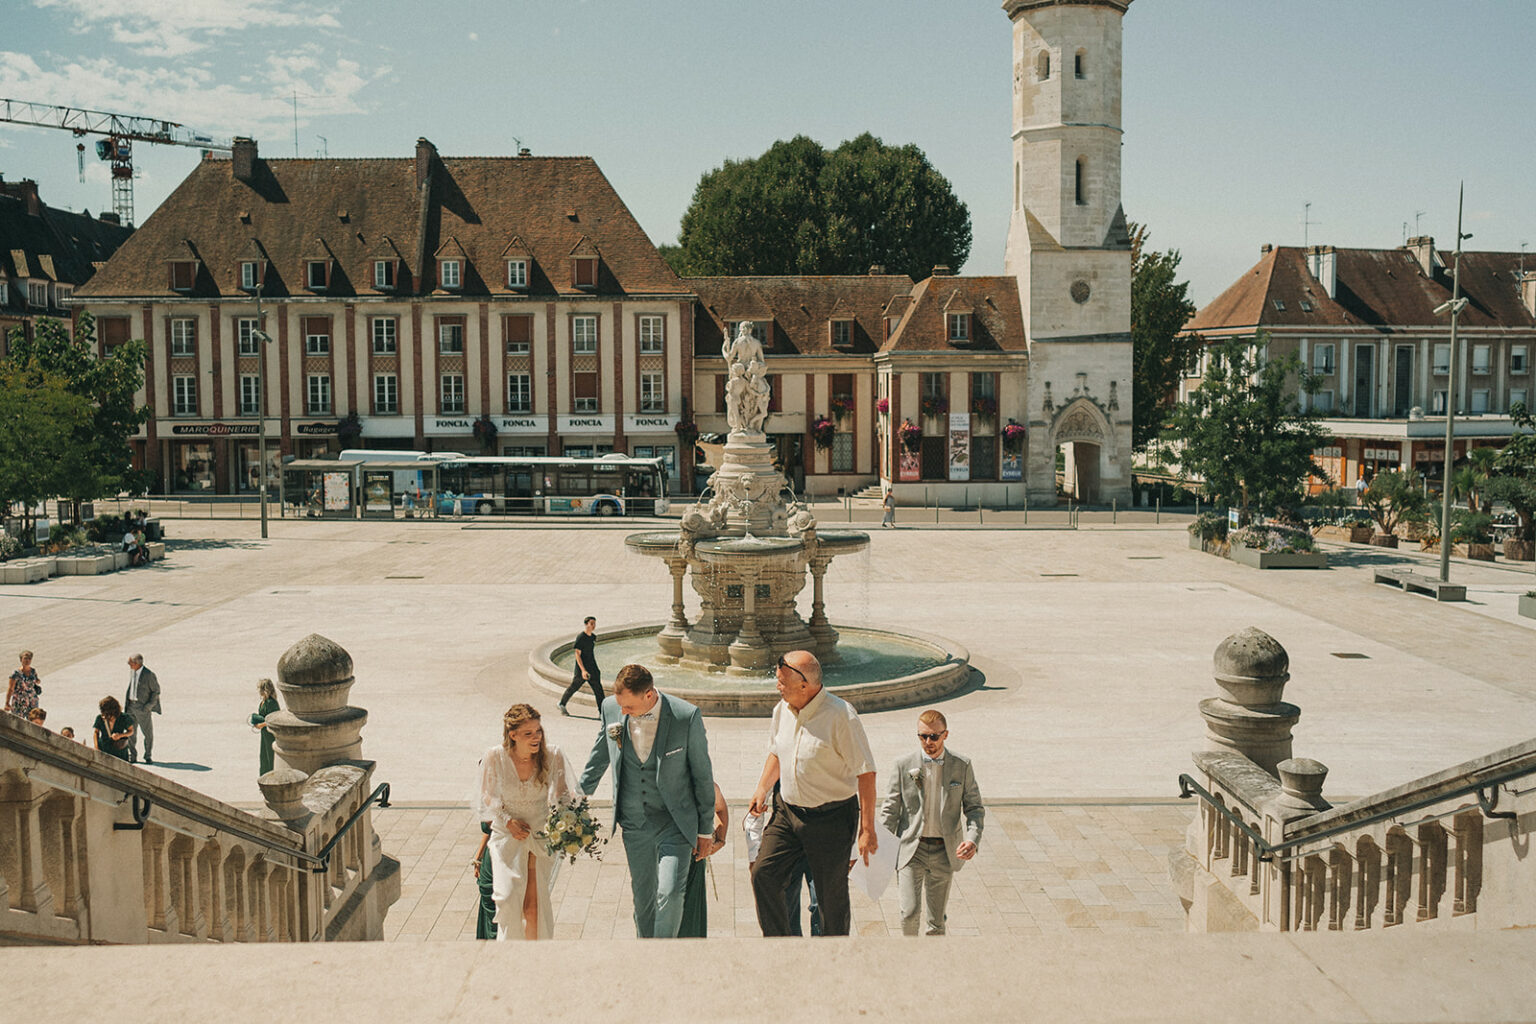 le mariage Fany et Jérémie à la mairie d'Evreux par Alain Leprévost photographe vidéaste de mariage en Normandie